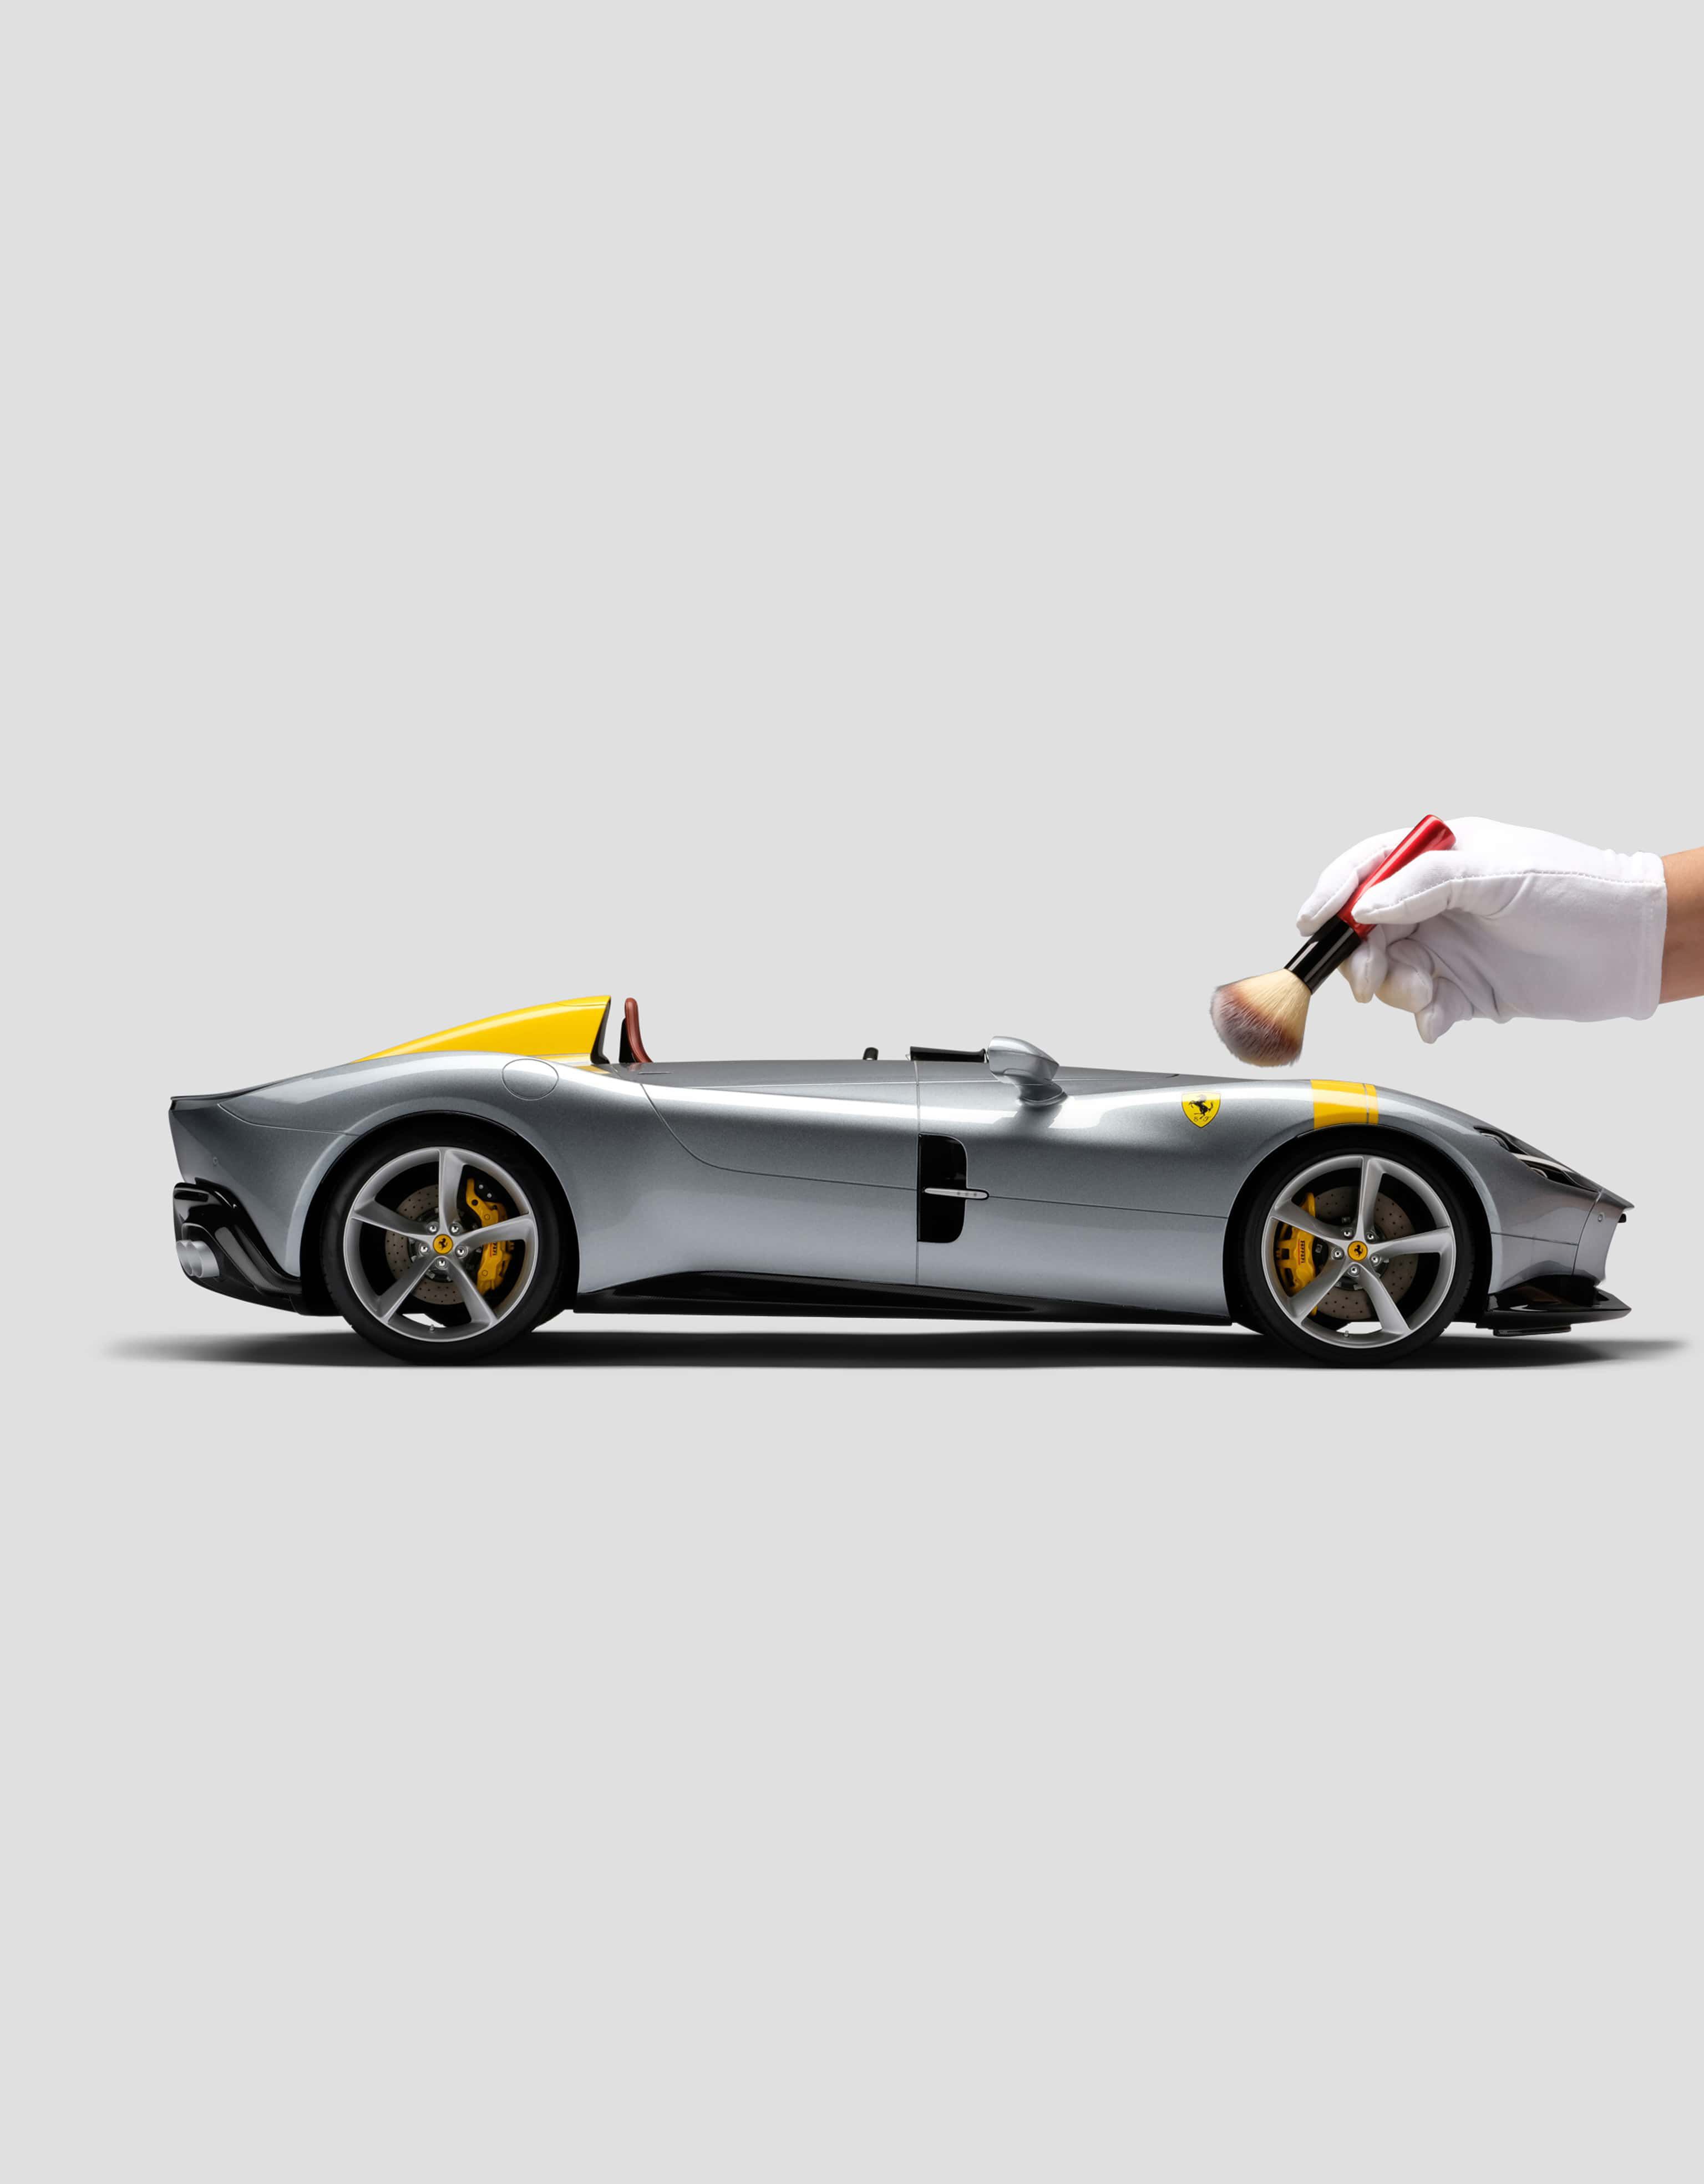 Ferrari Monza SP1 モデルカー 1:8スケール、マルチカラーの | Ferrari®